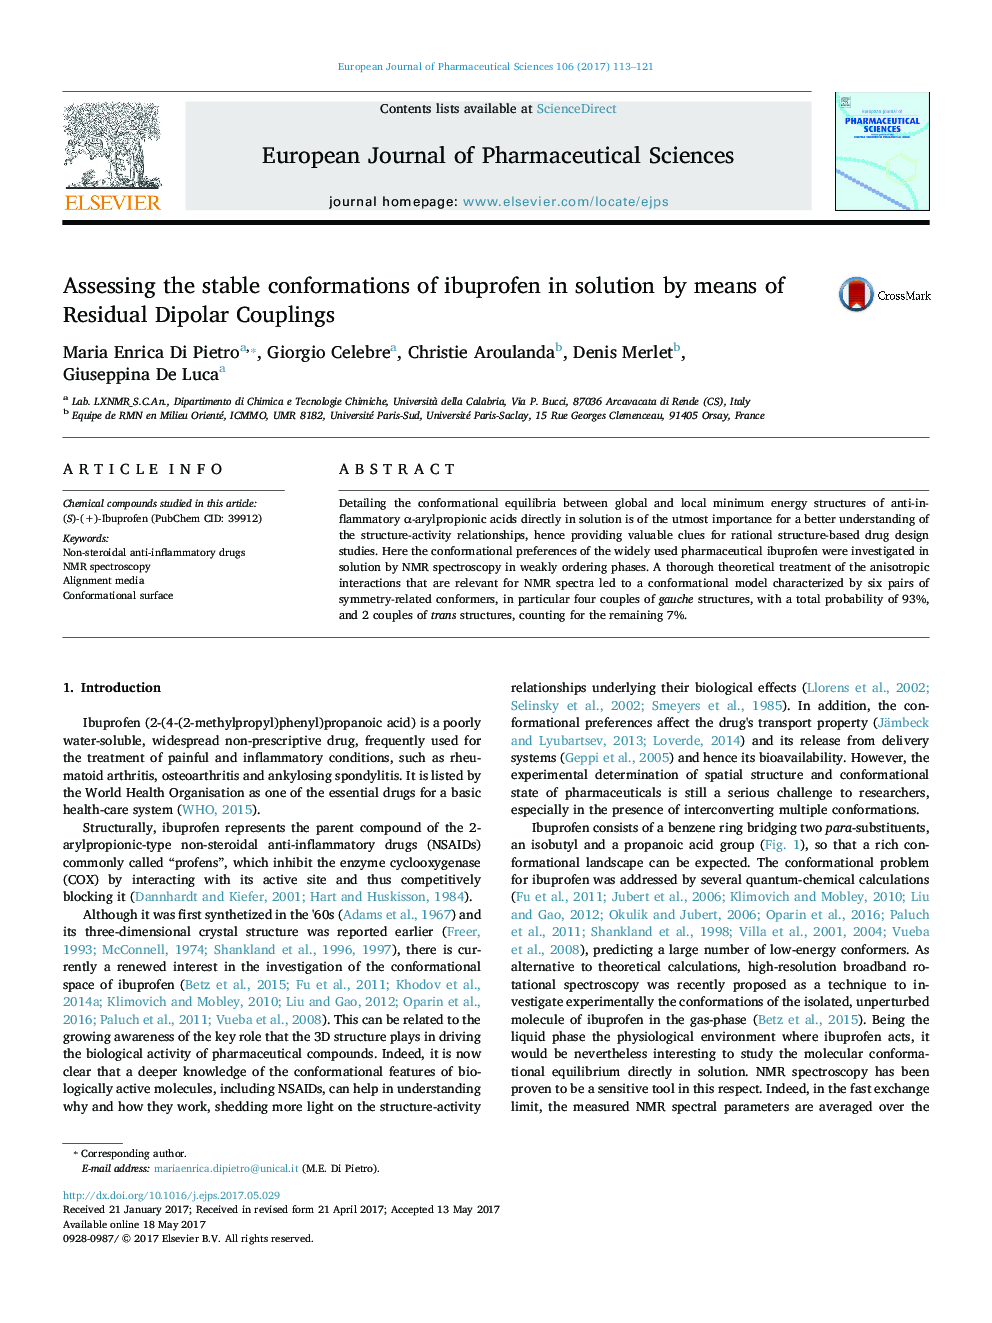 ارزیابی سازگاری پایدار ایبوپروفن در محلول با استفاده از کوپلینگ دوقطبی باقی مانده 